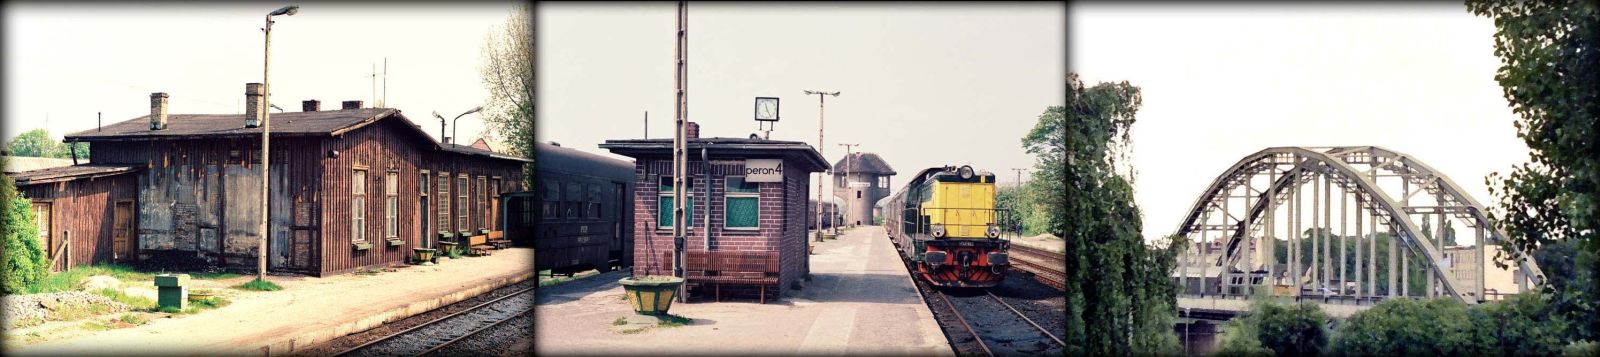 Po lewej peron pierwszy i budynek nie istniejący od momentu zawalenia podczas rozbiórki w dniu 08.12.1994 roku. W środku pociąg do Zbąszynka w 1991 roku, dalej po prawej Wiadukt i jadący pociąg osobowy ze Zbąszynka w czerwcu 1988 roku.